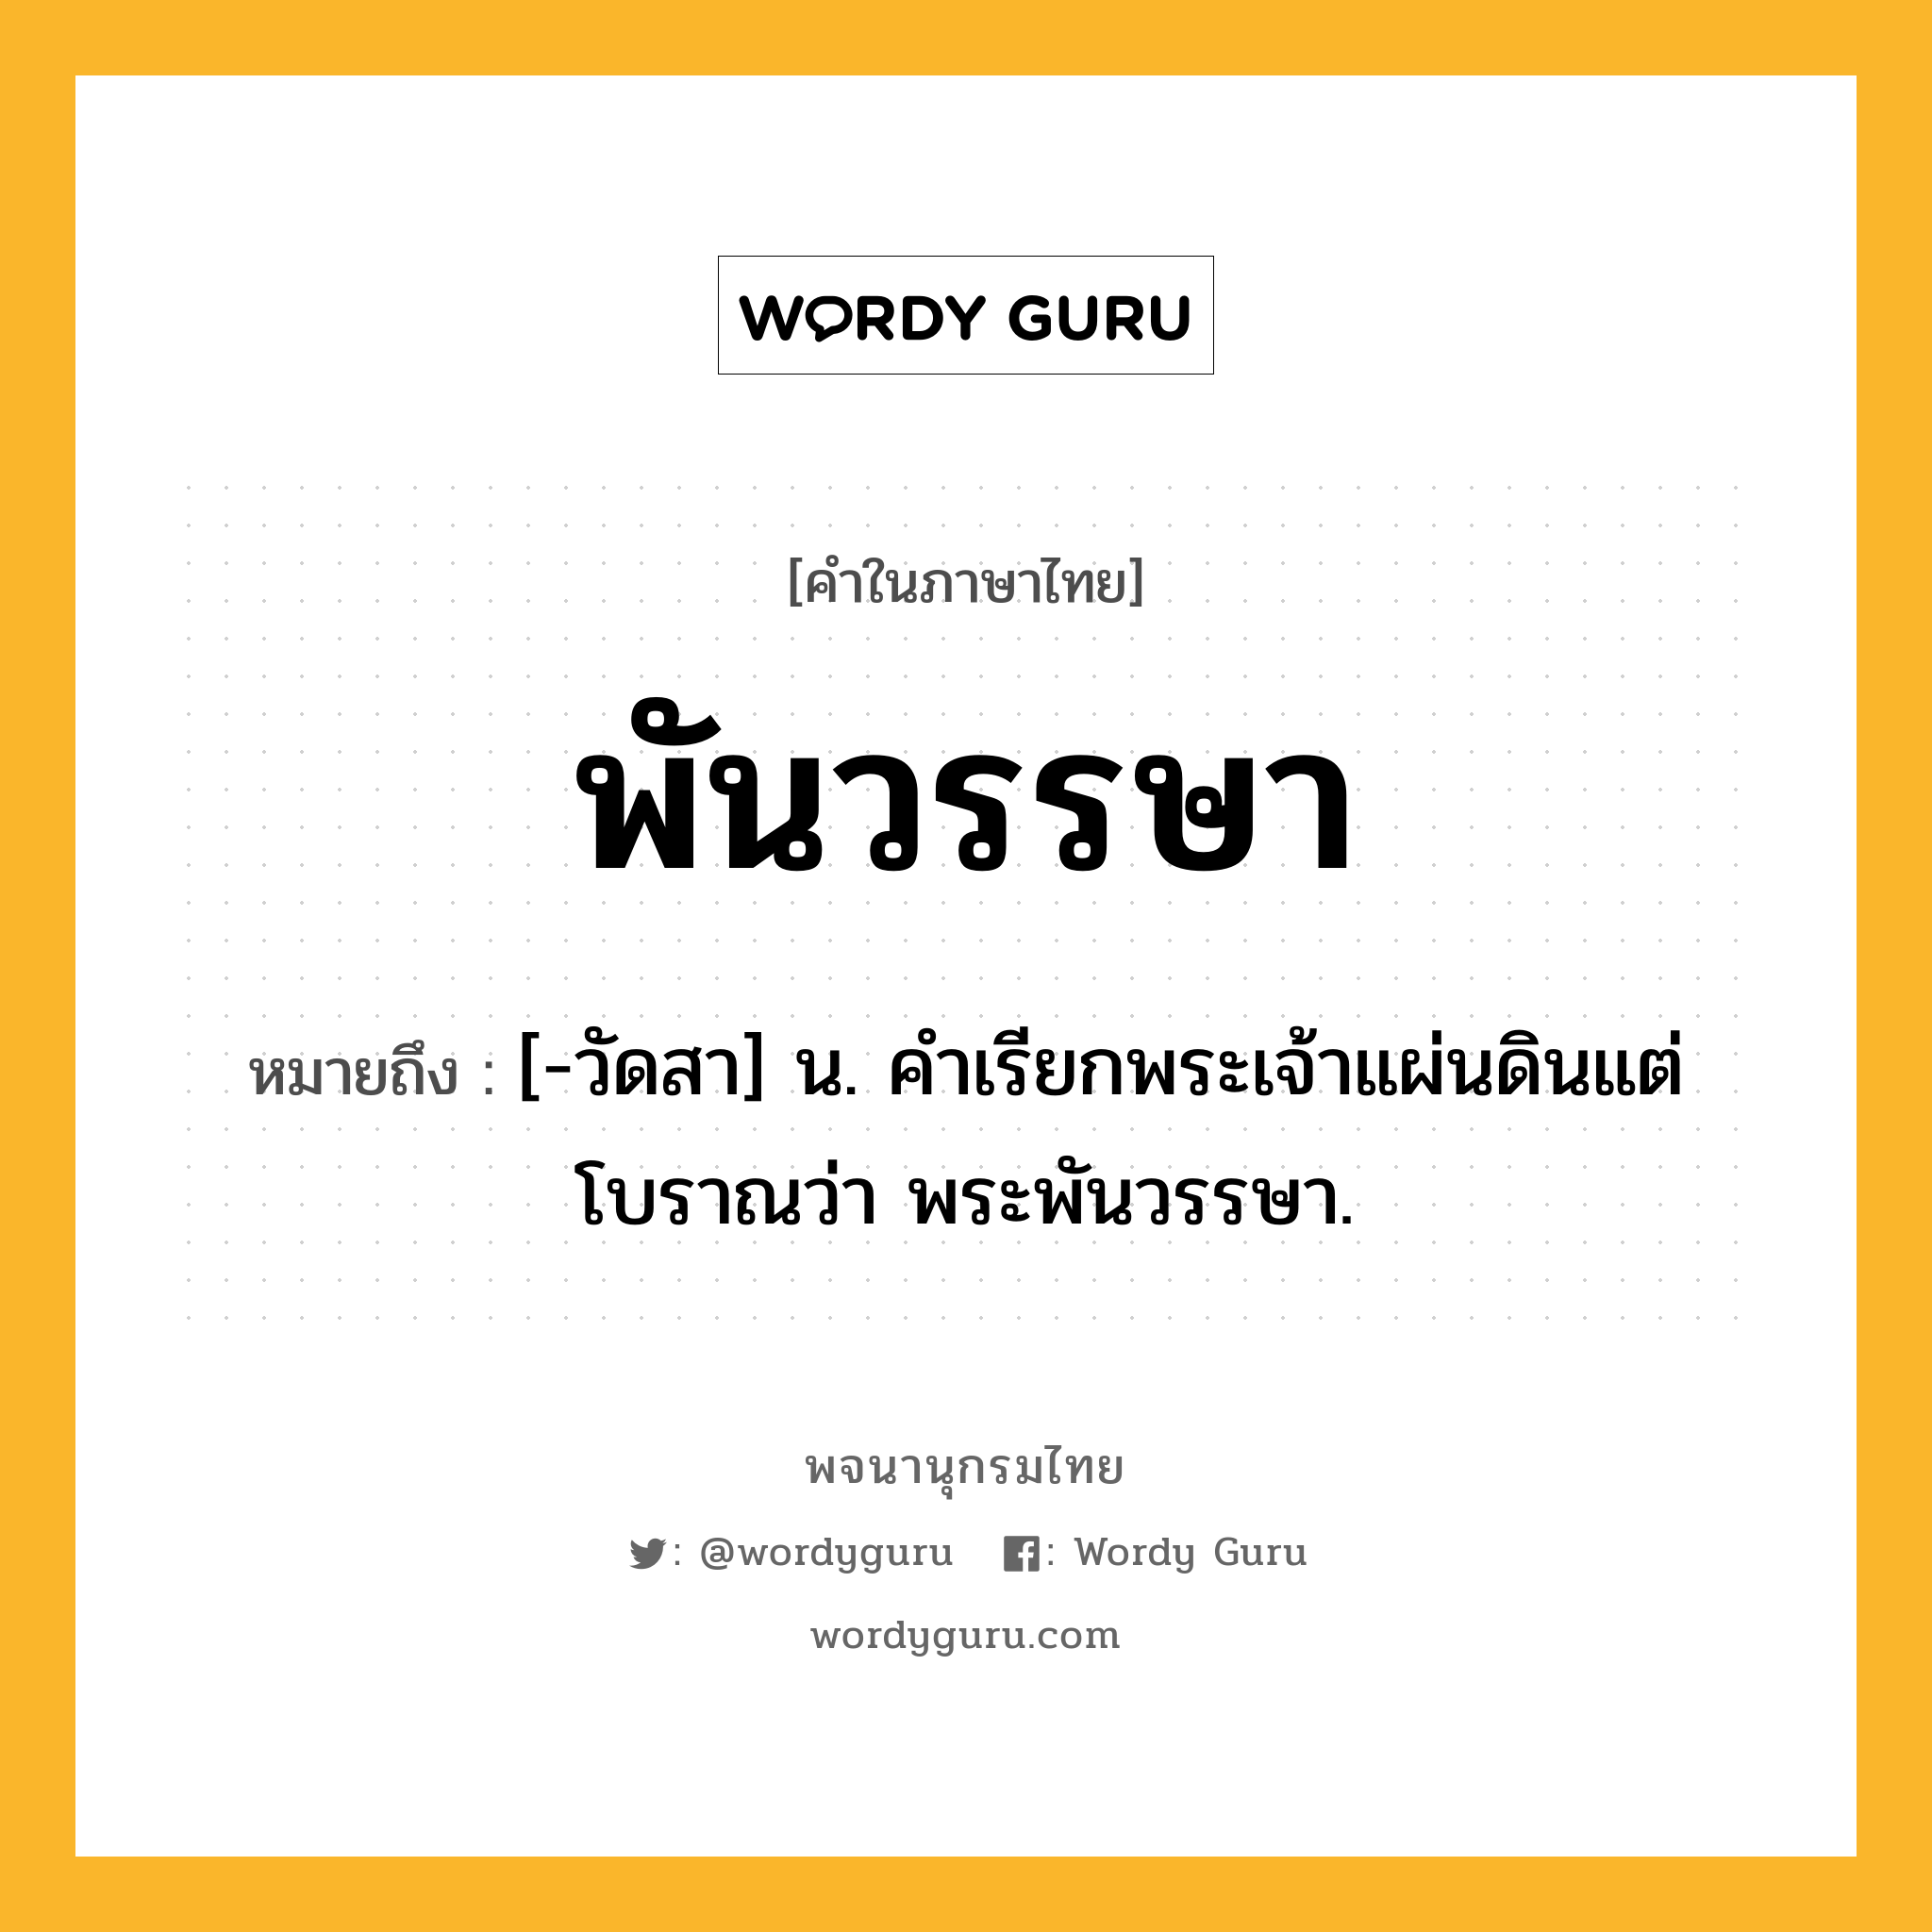 พันวรรษา ความหมาย หมายถึงอะไร?, คำในภาษาไทย พันวรรษา หมายถึง [-วัดสา] น. คําเรียกพระเจ้าแผ่นดินแต่โบราณว่า พระพันวรรษา.